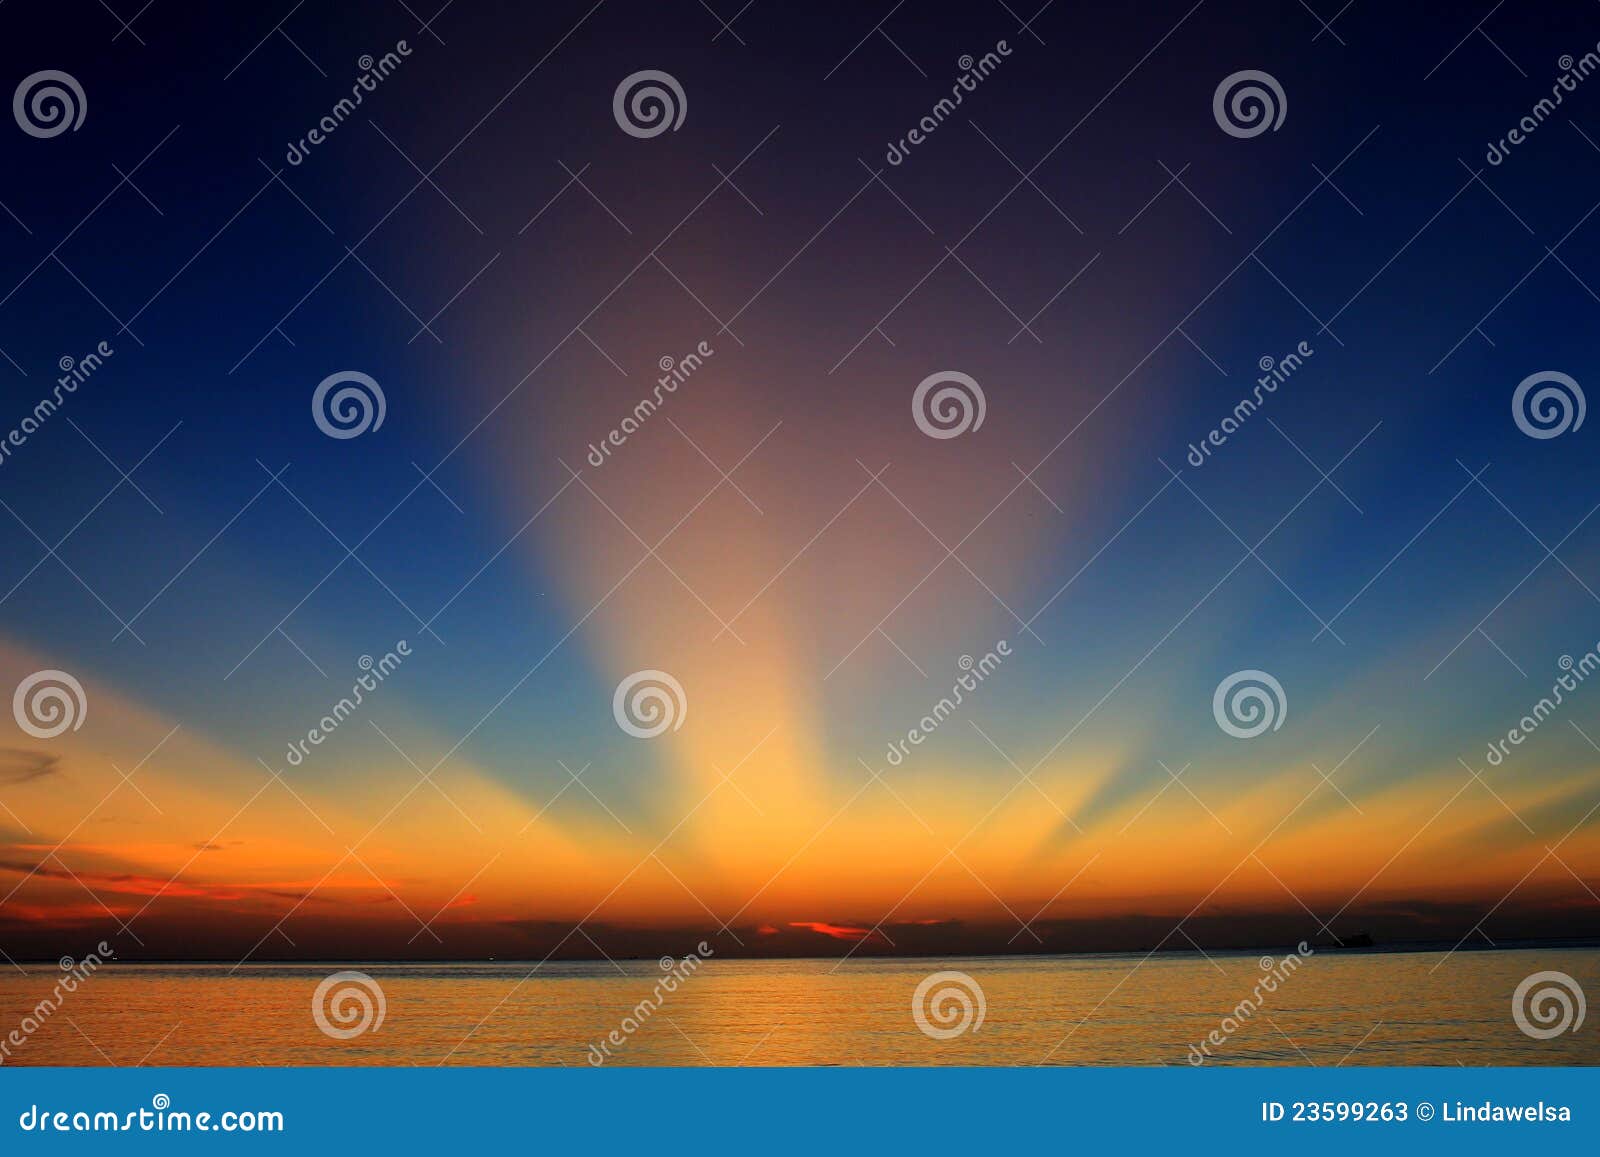 capture of sunset sunbeam